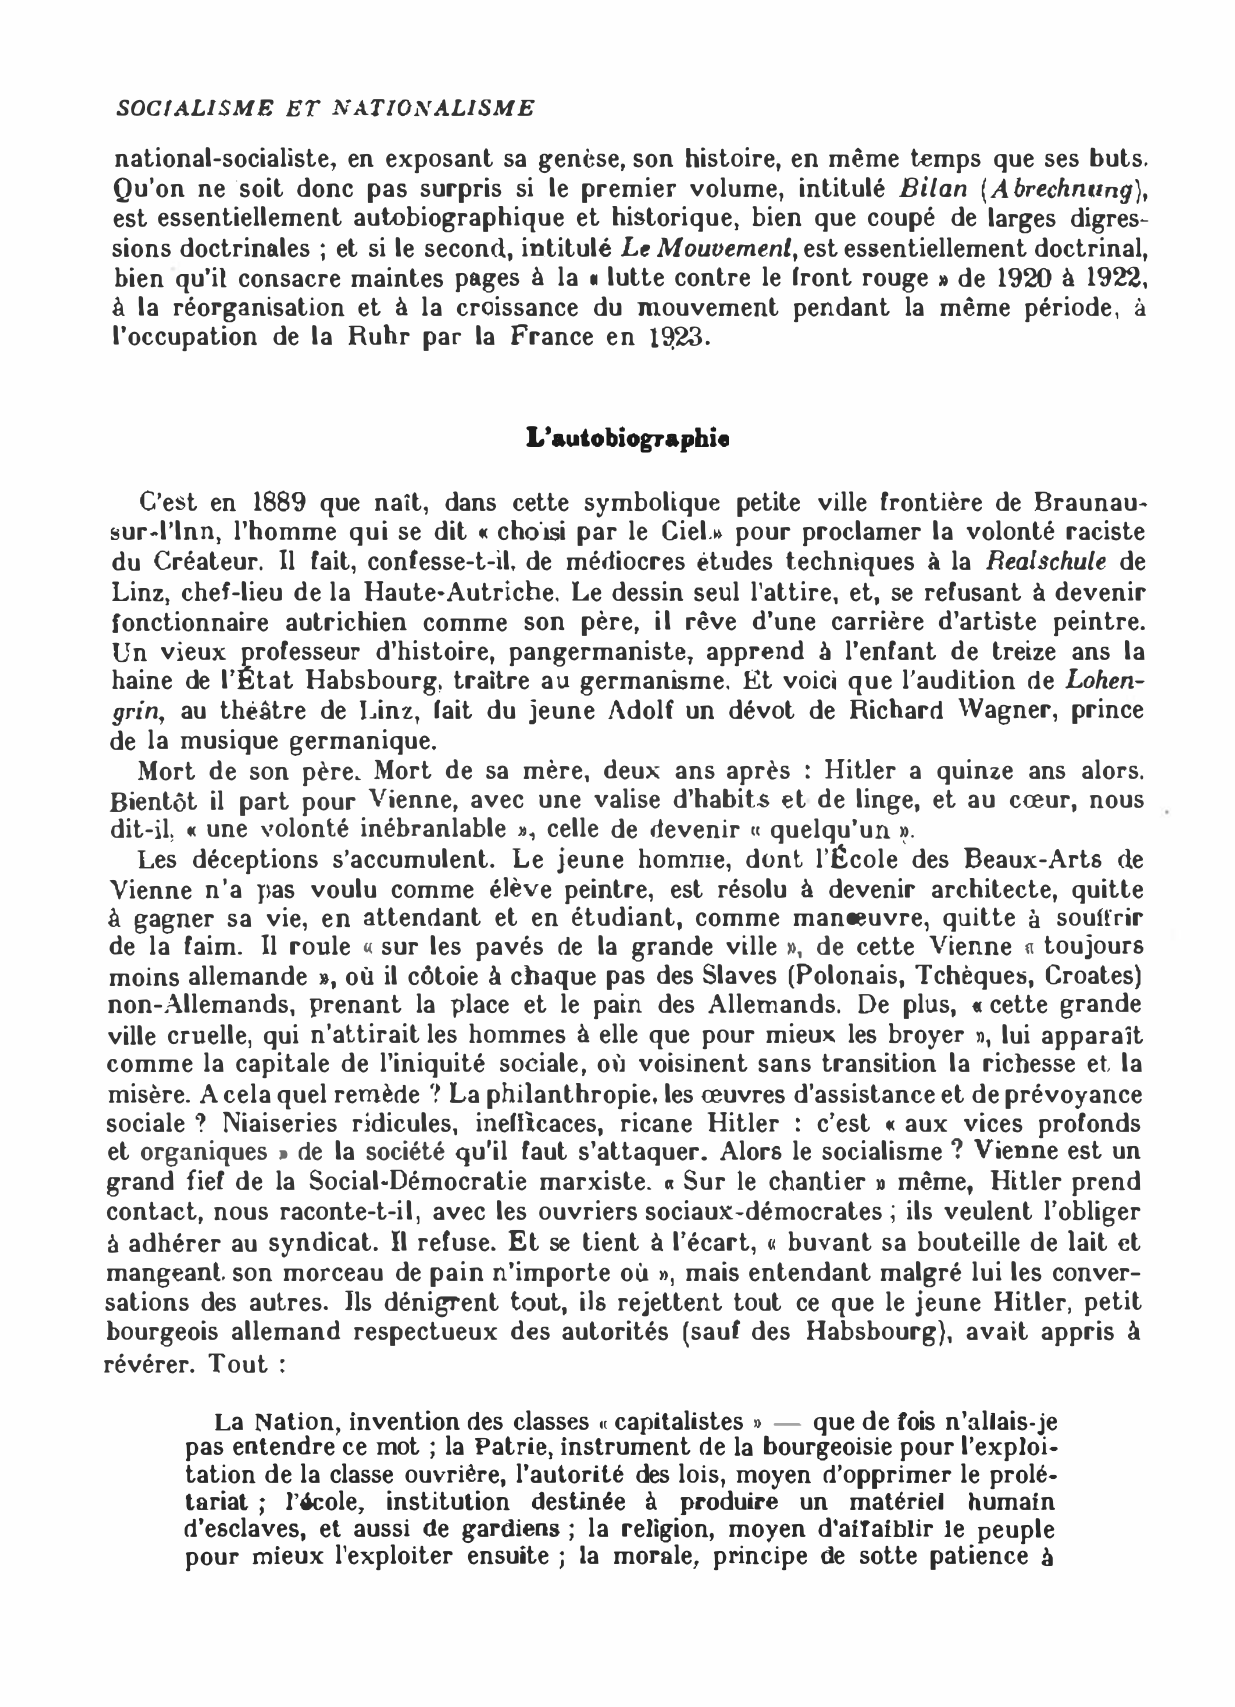 Prévisualisation du document « RÉFLEXIONS SUR LA RÉVOLUTION DE FRANCE » D'EDMUND BURKE